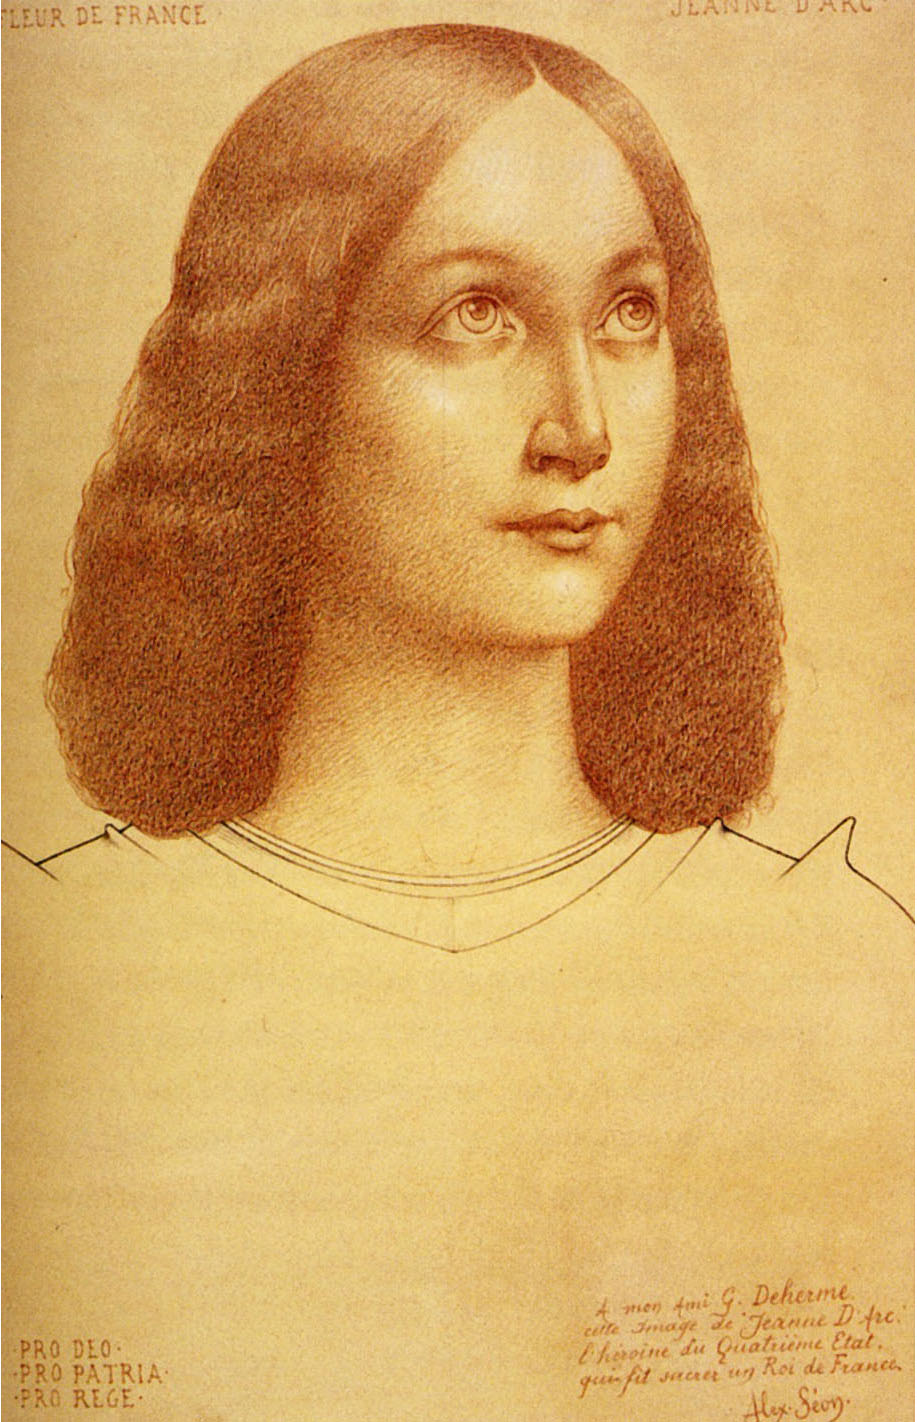 Александр Сеон. "Жанна д'Арк". 1909. Частная коллекция.